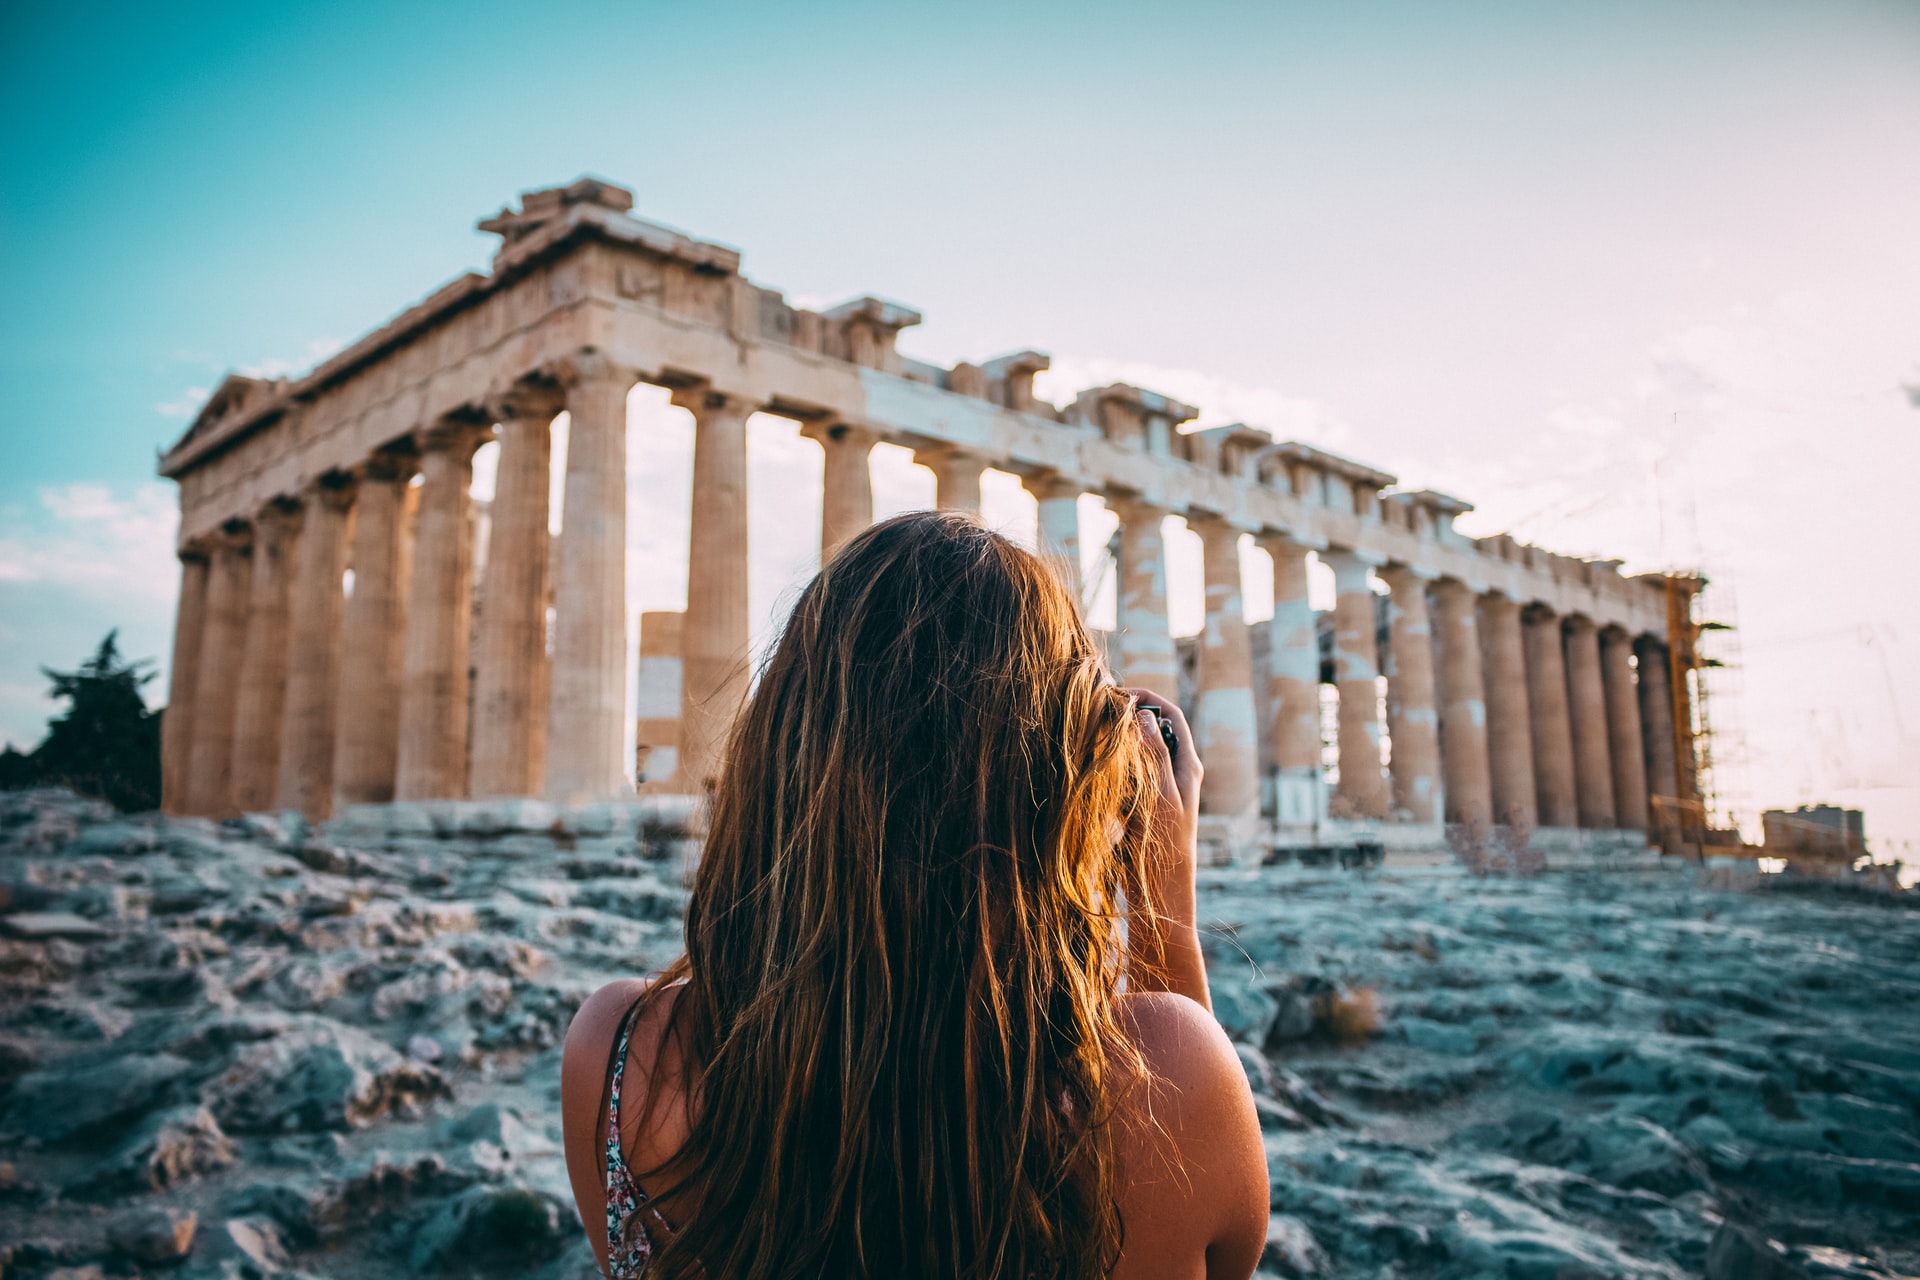 Una turista fotografía el reconocido Partenón griego, enclavado en la Acrópolis a las afueras de Atenas. Foto: UNsplash / Arthur Yeti